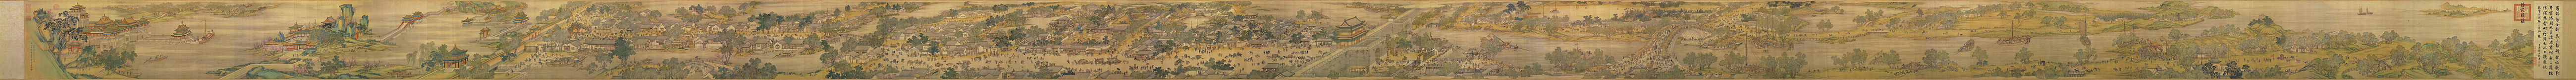 Den Fluss entlang während des Qingming-Fests, von Chen Mu, Sun Hu, Jin Kun, Dai Hong und Cheng Zhidao (Bildanfang ganz rechts)